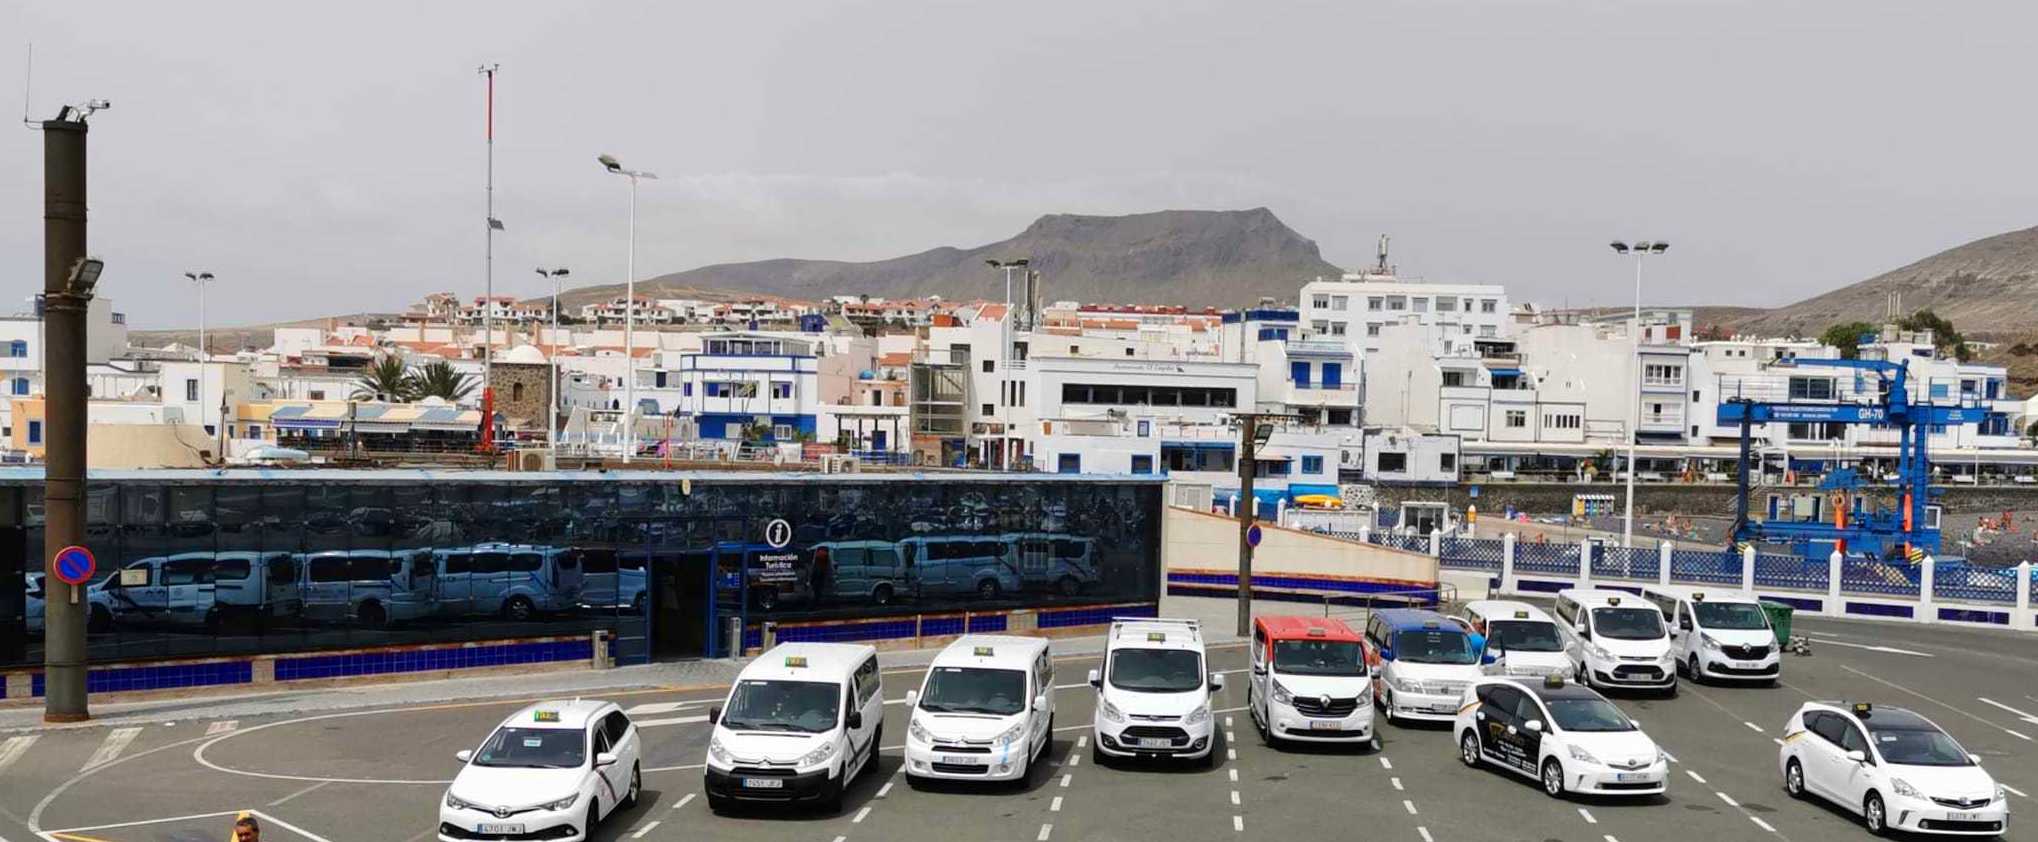  17/07/2020, Puerto de las Nieves, Agaete; 11 Taxistas de 6 de los 21 municipios de Gran Canarias. (Agaete, Guía, Maspalomas, Telde, San Mateo y Las Palmas de Gran Canaria).